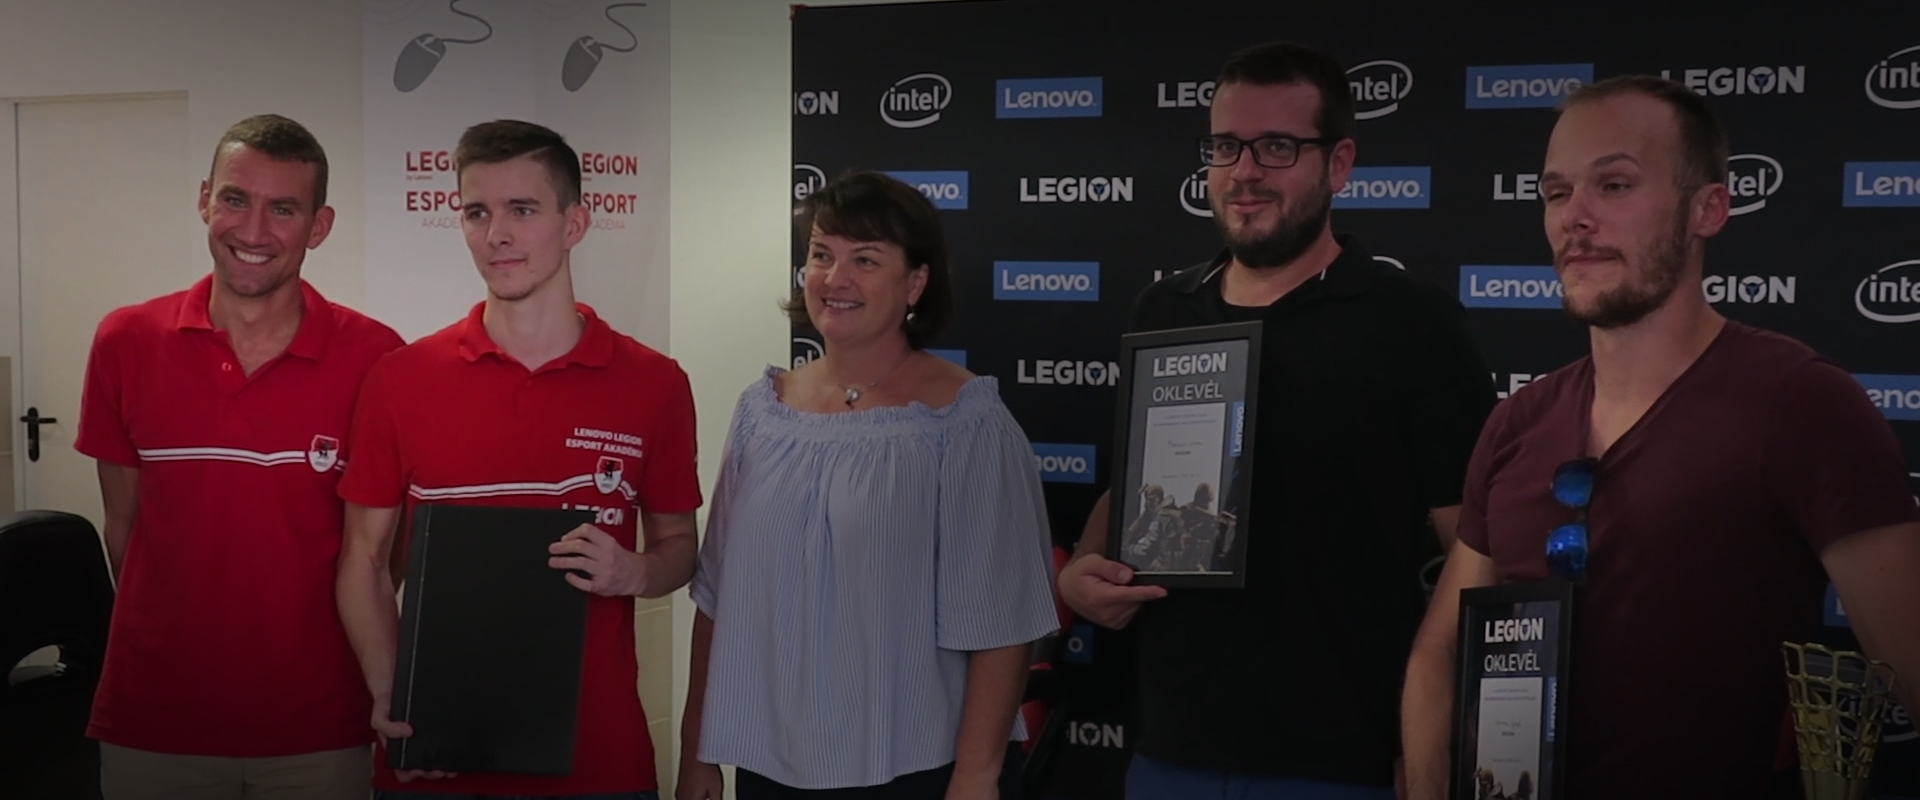 Profik tesztelték a Lenovo új laptopját